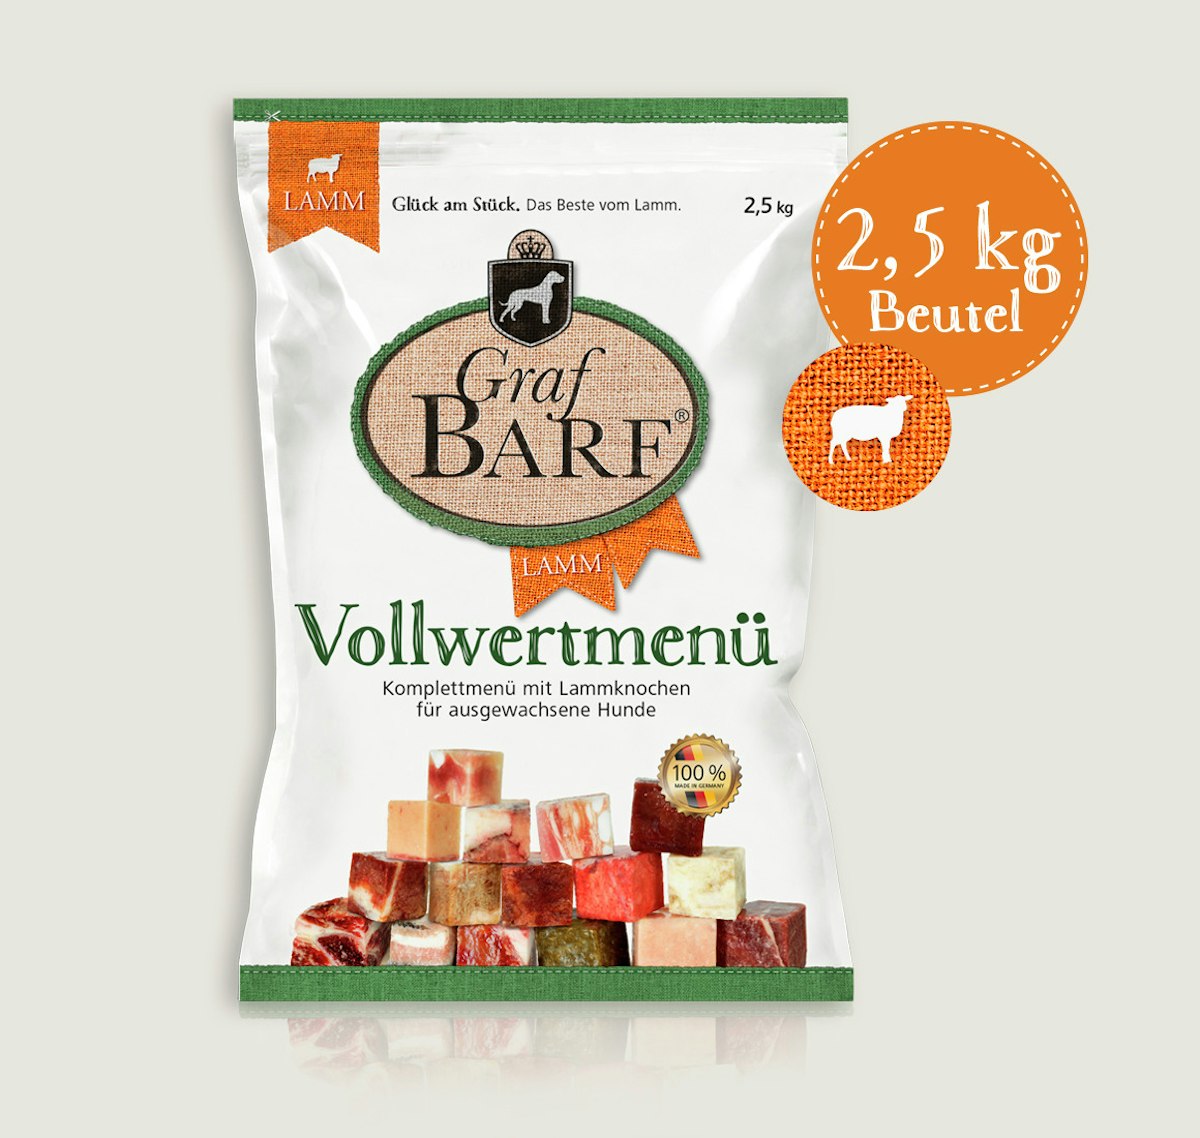 Graf Barf Vollwertmenü Lamm Spezialfutter / Frostfutter für Hunde Sparpaket 8 x 2,5 Kilogramm